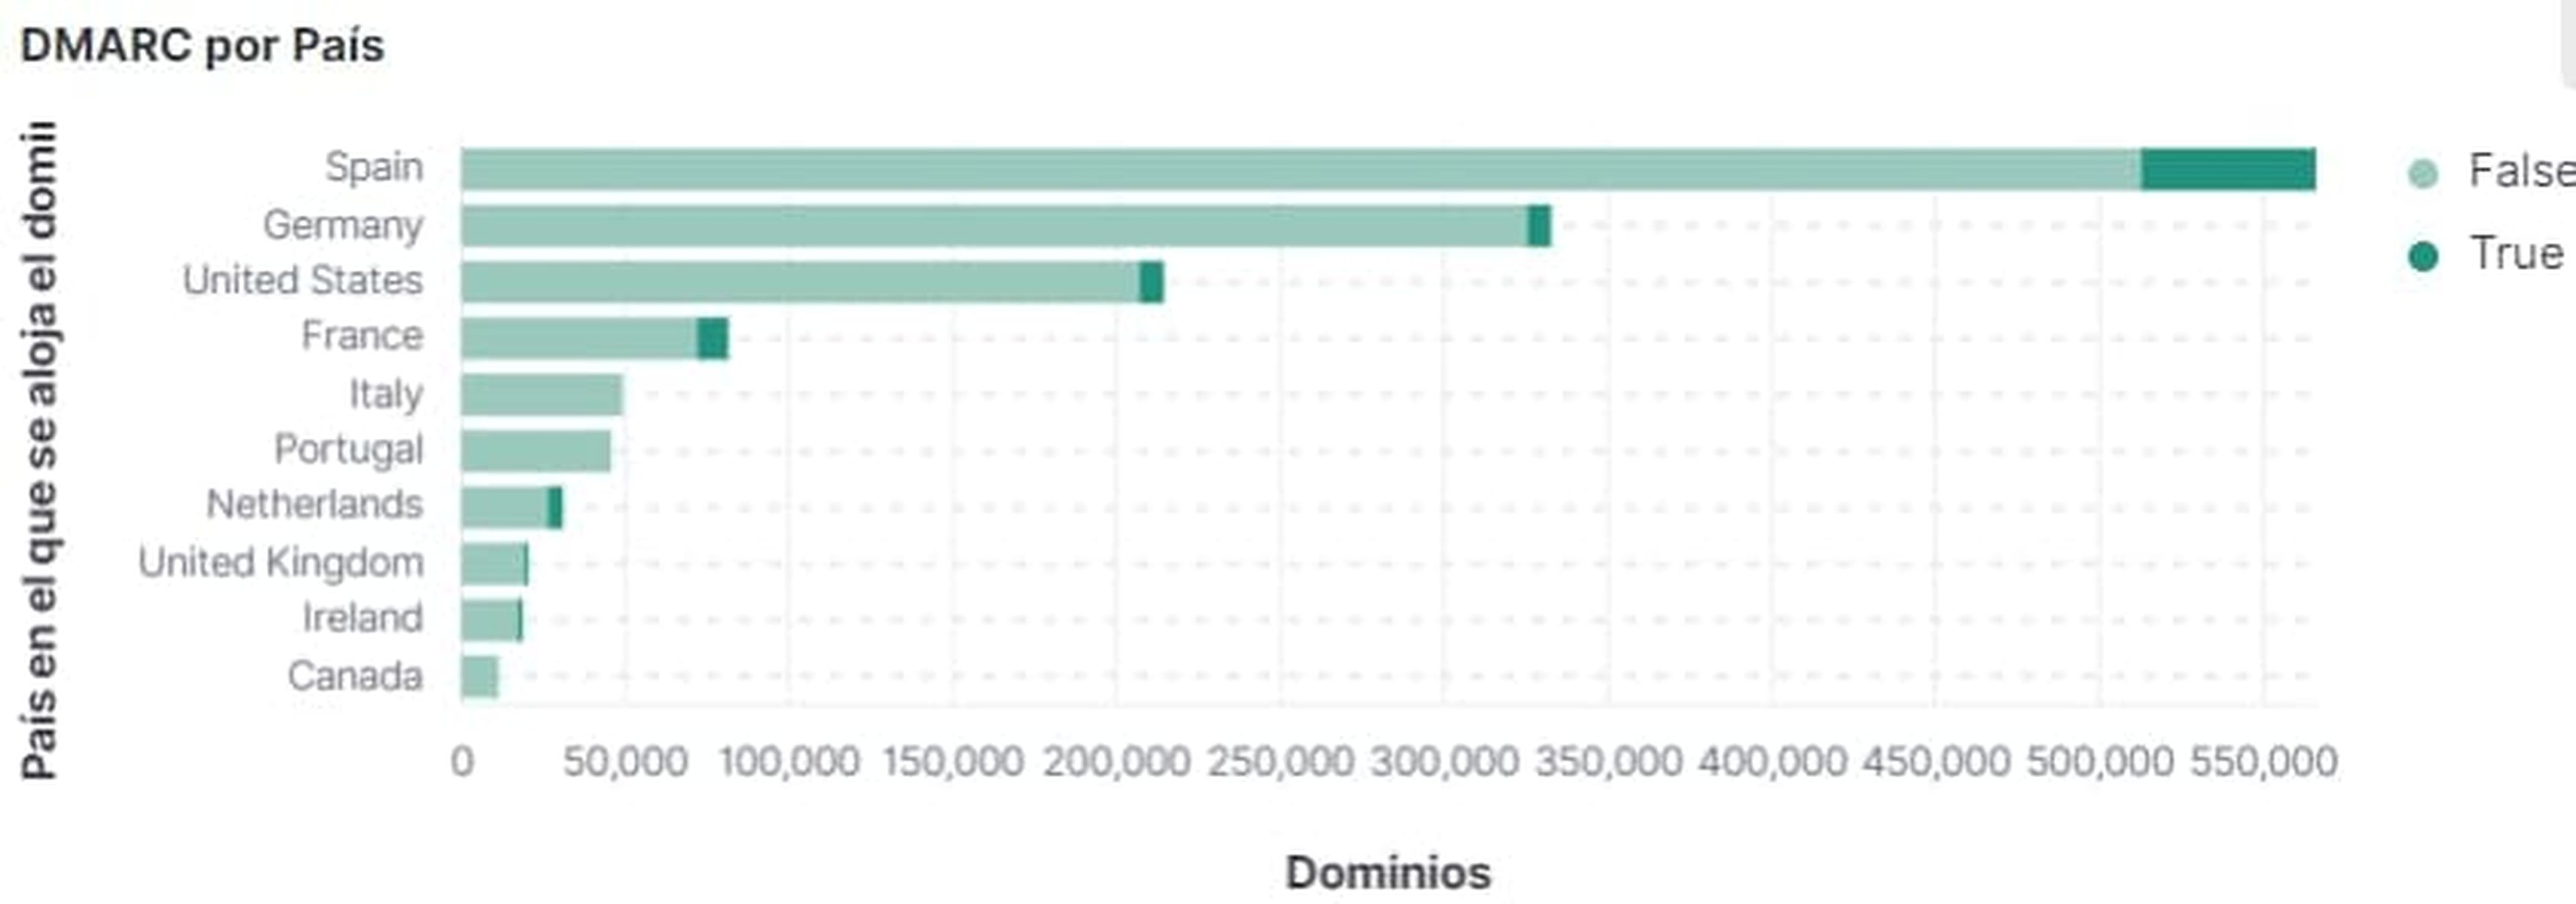 DMARC activos en dominios españoles.